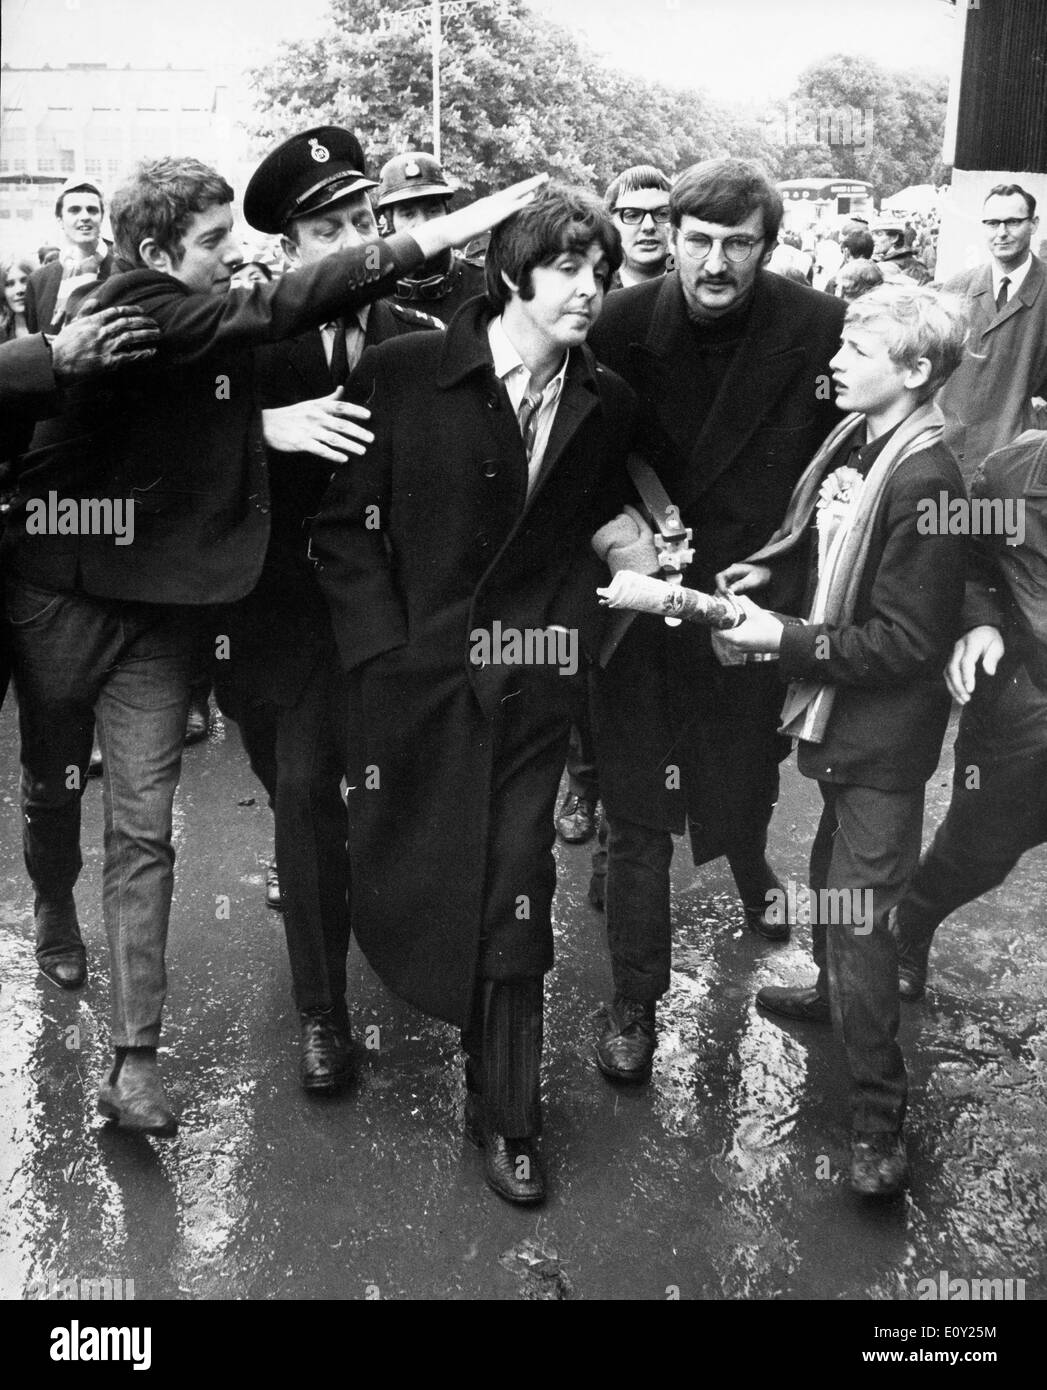 Brug af en computer Springe akse Singer Paul McCartney surrounded by fans Stock Photo - Alamy